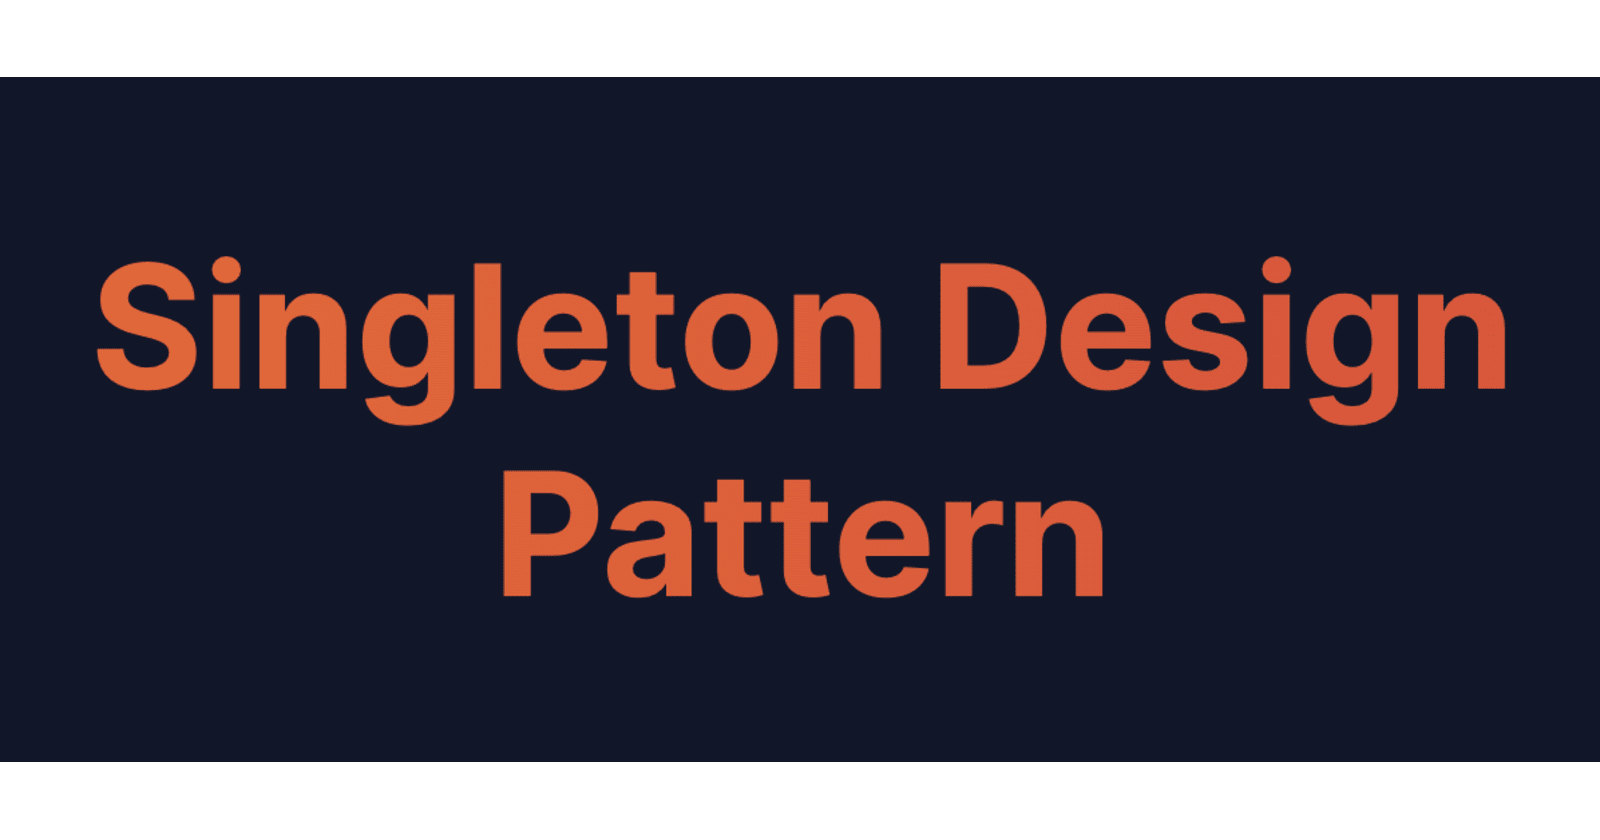 Exploring Singleton Design Patterns in iOS